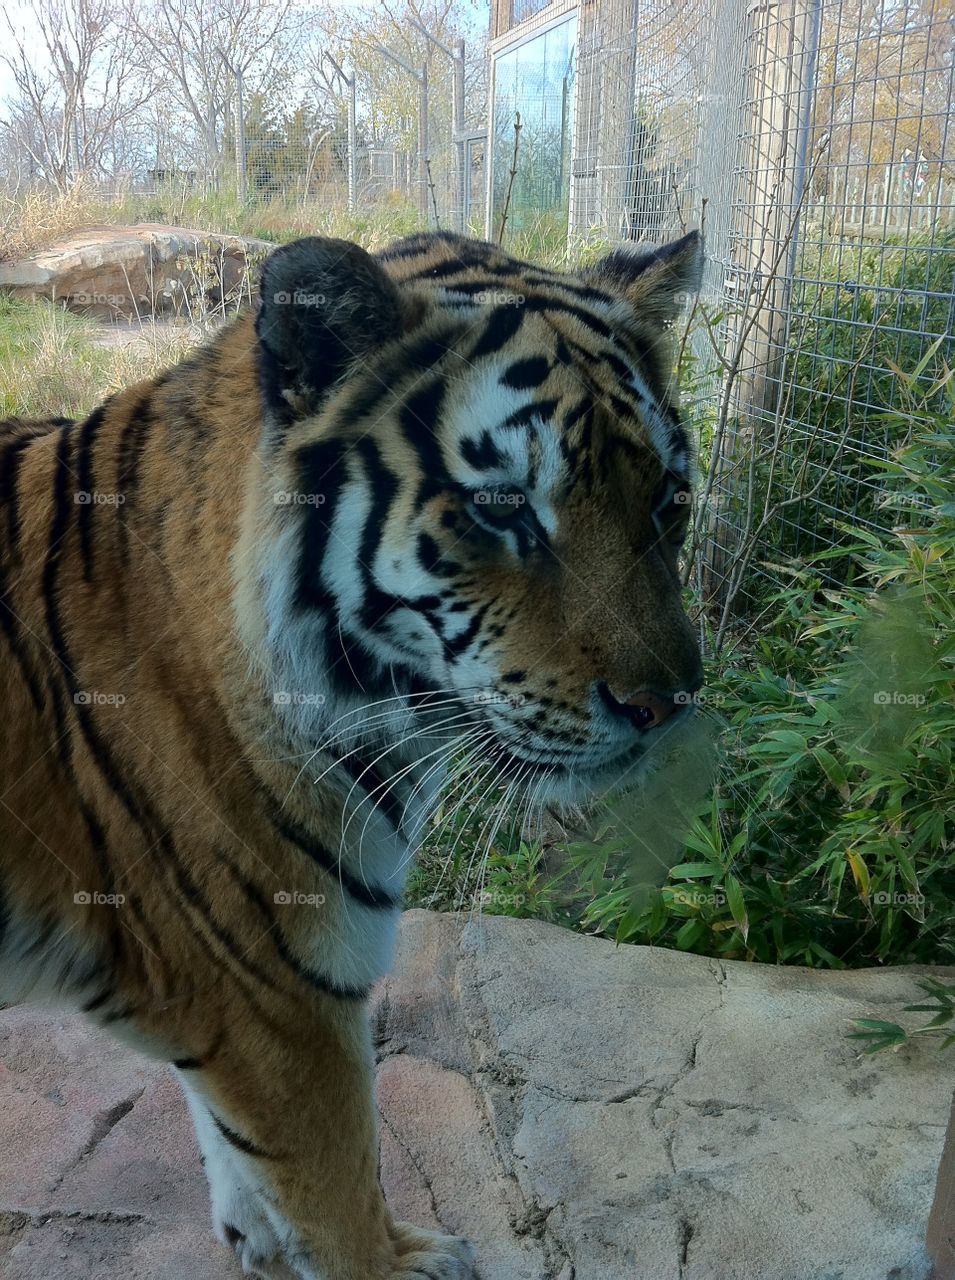 Tiger. Tiger at Sedgwick county zoo 